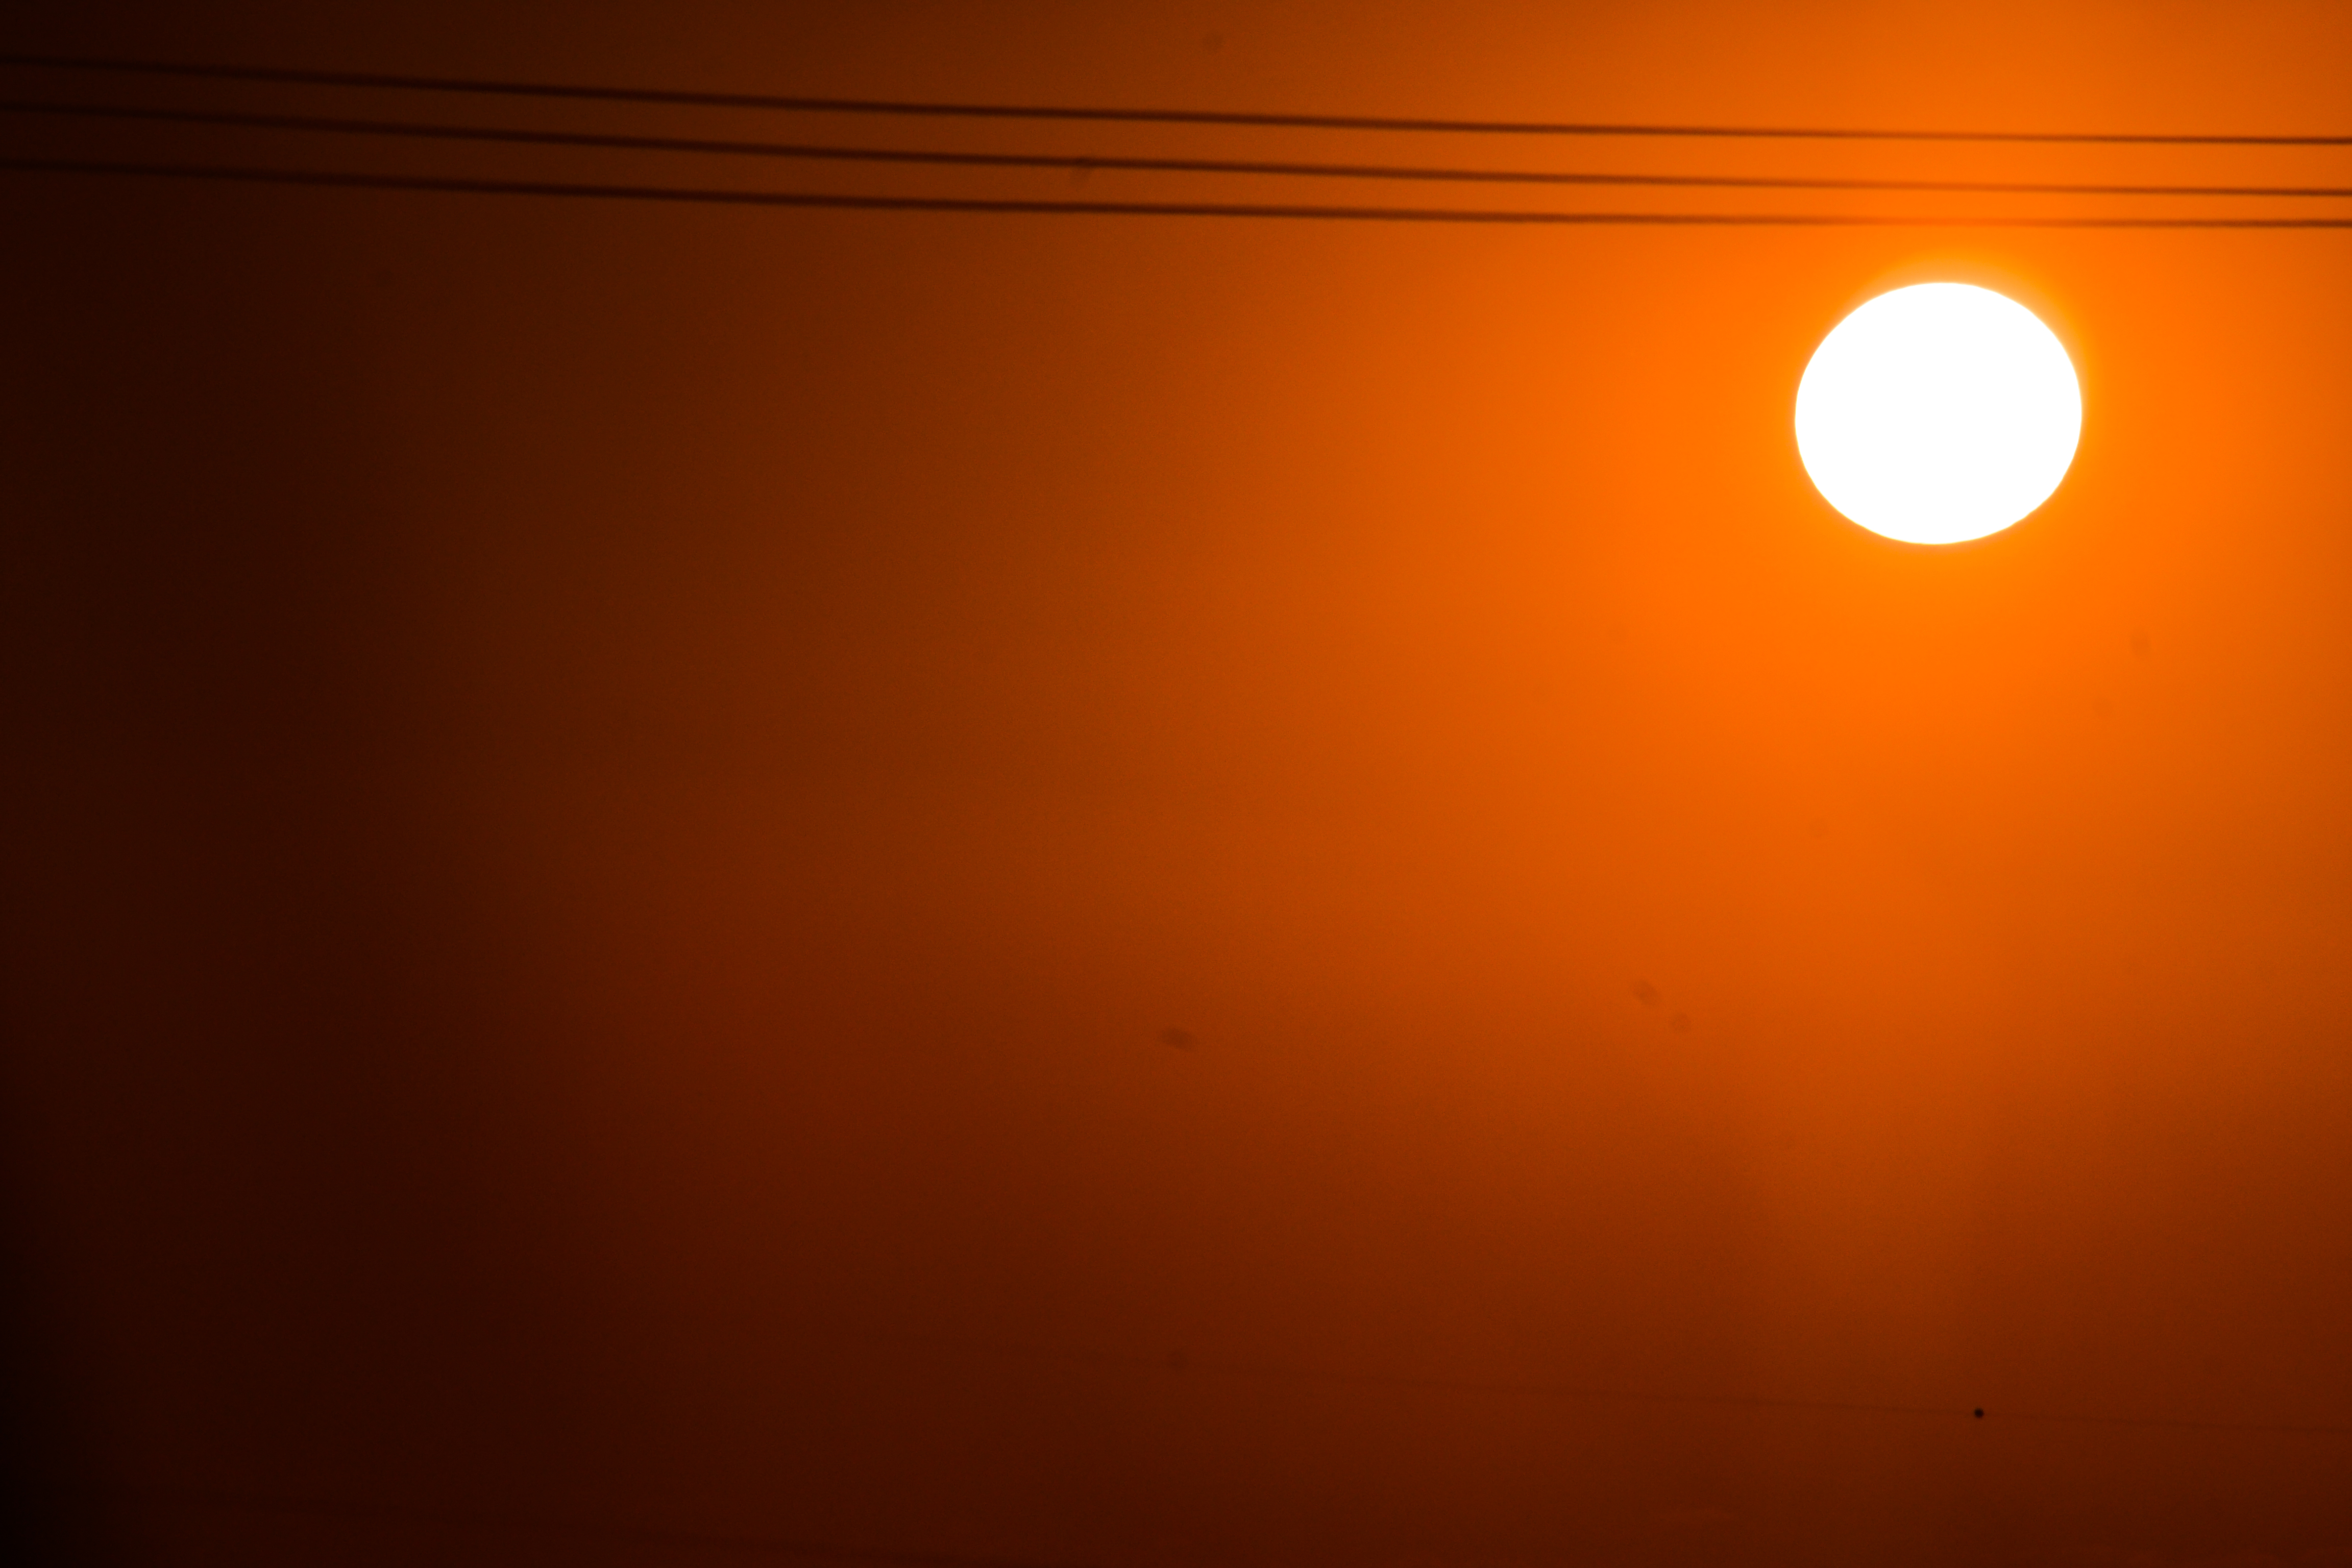 File:Sunset full sun.jpg - Wikimedia Commons